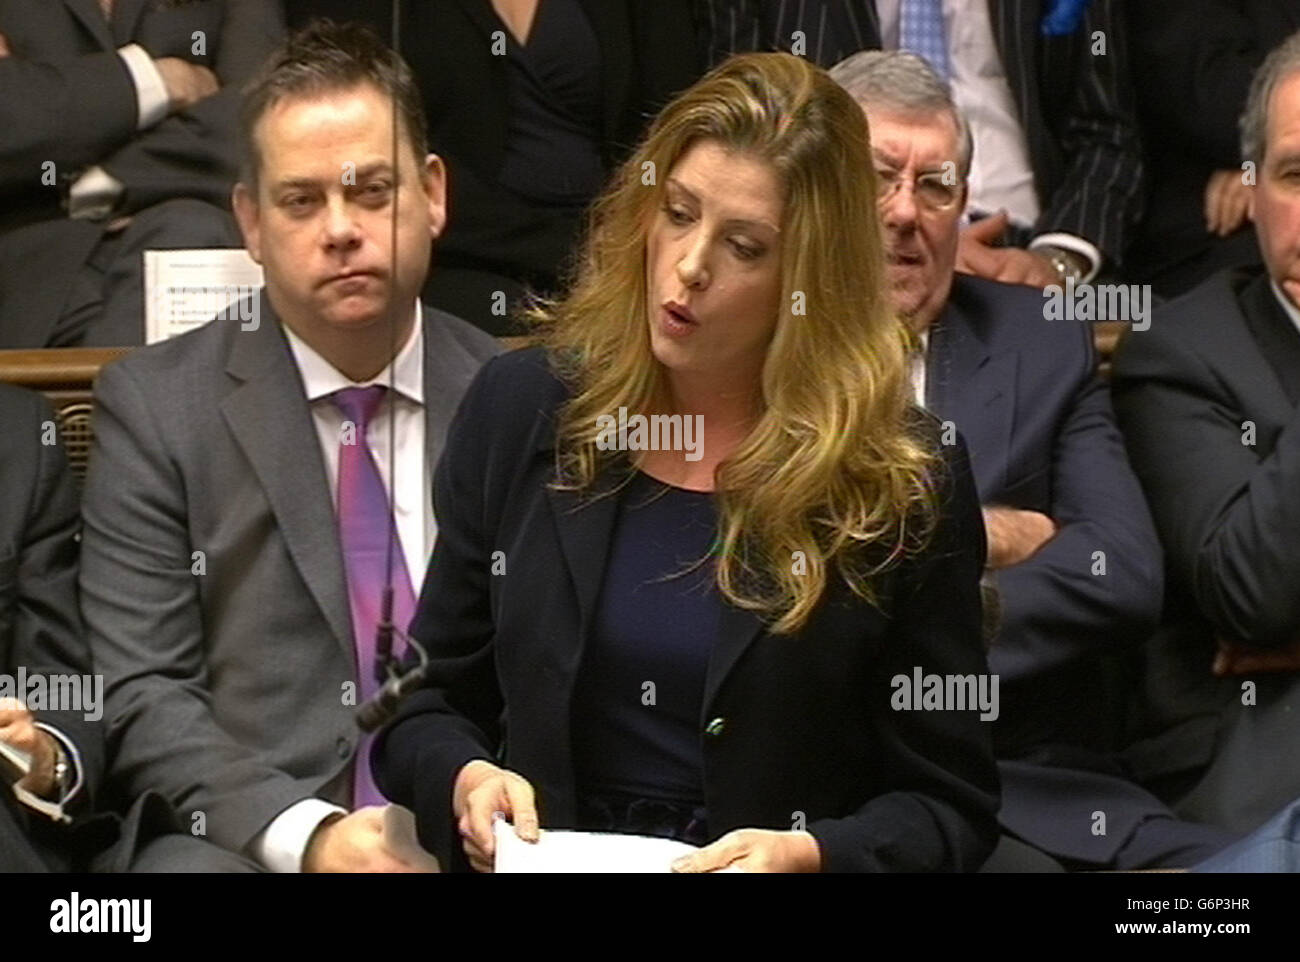 Der Tory-Abgeordnete Penny Mordaunt stellte eine Frage während der heutigen Fragen des Premierministers im Unterhaus, London. Mordaunt - die als sexieste Parlamentarierin eingestuft wurde - wird sich als Teilnehmerin in der Promi-Tauchshow Splash zu ihrem Badeanzug im Live-Fernsehen ausziehen! Stockfoto